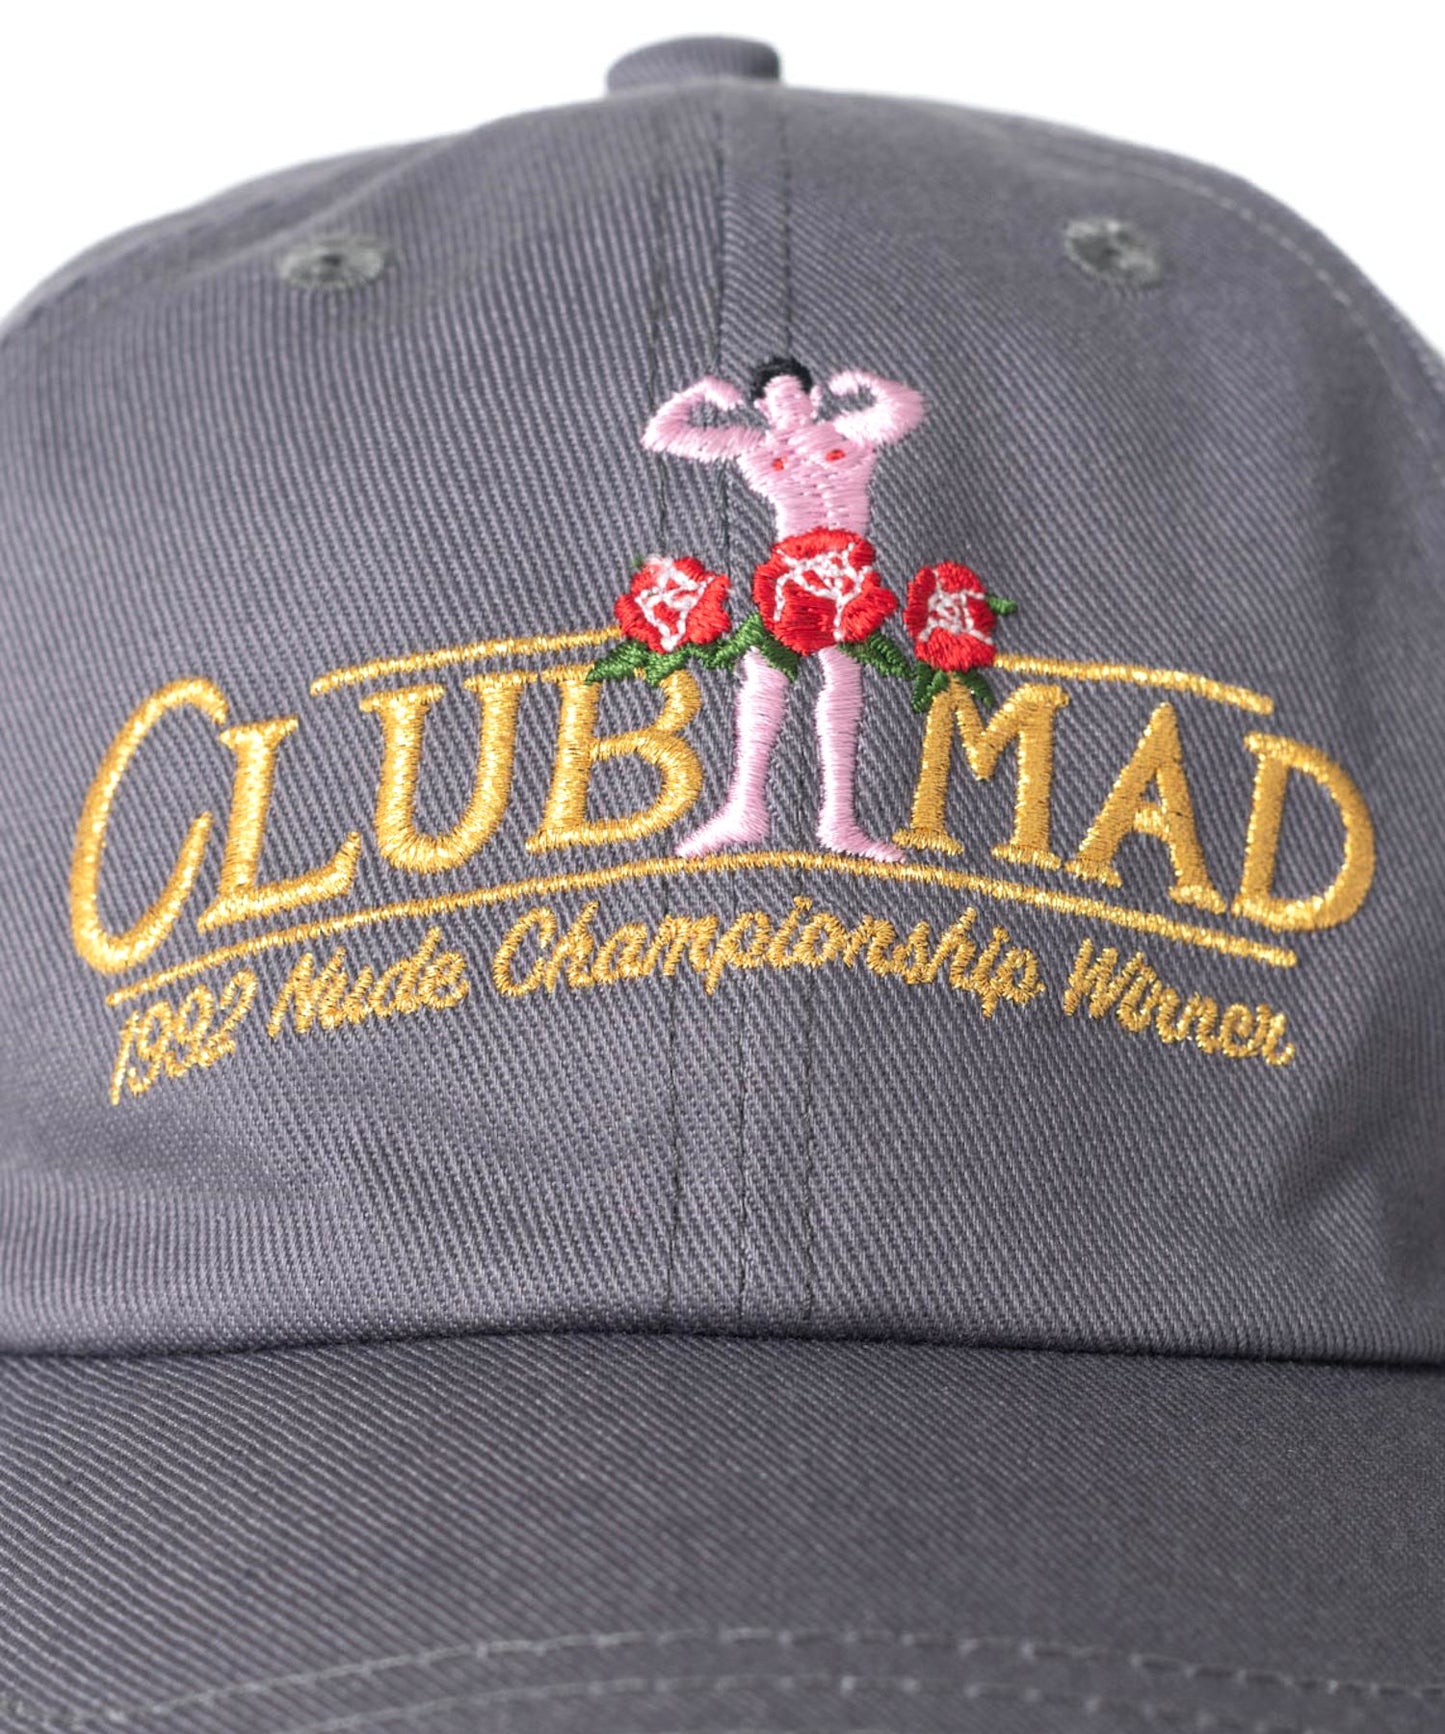 Club Mad 1994 grey